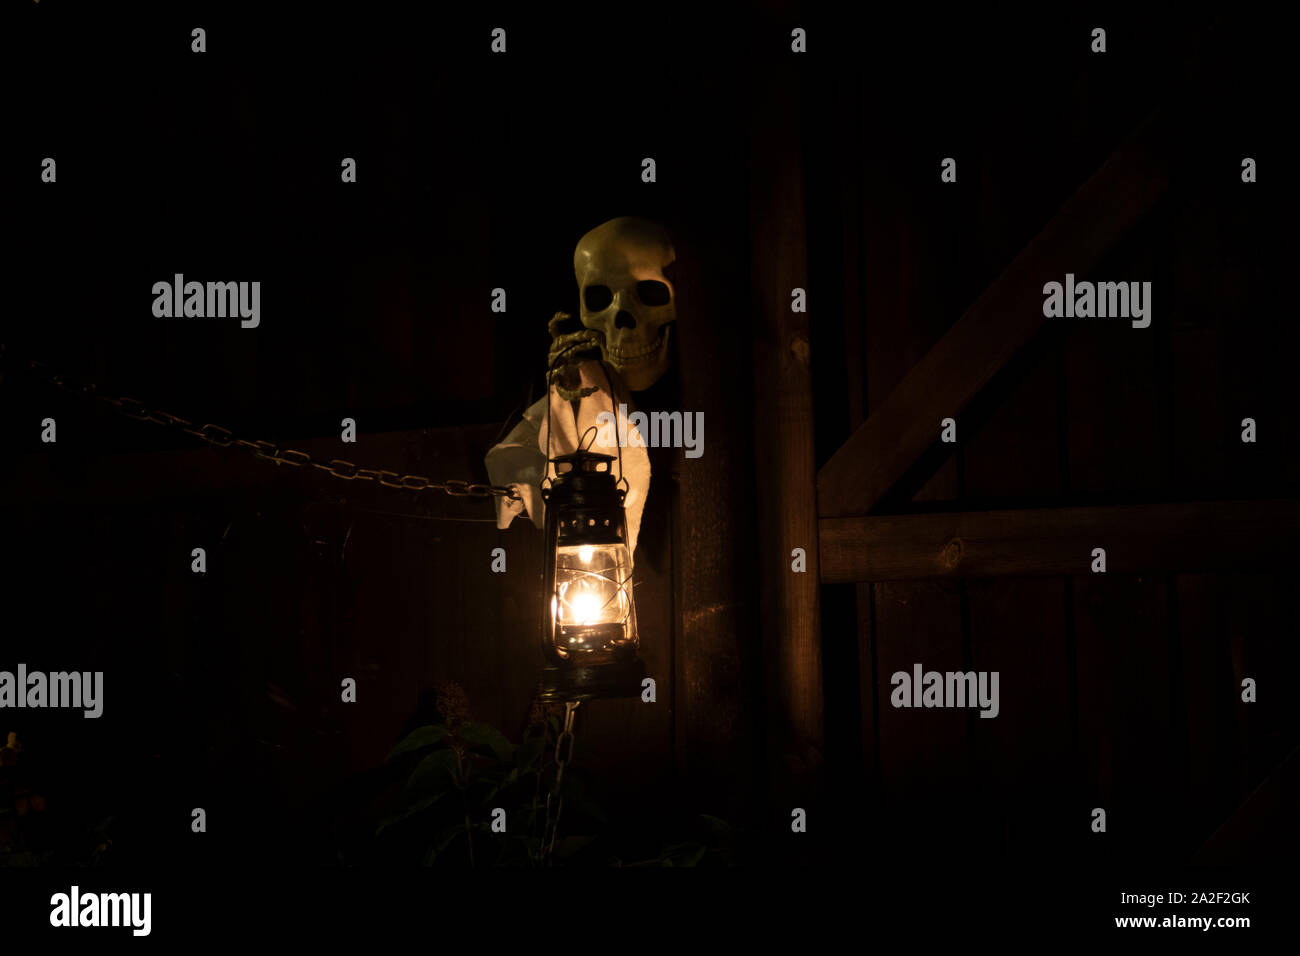 Droitwich Spa, Worcester, England, United Kingdom, 02/10/2019, Ghost tours, squelette tenant une lampe à huile allumée contre une structure en bois dans la nuit. Hallo Banque D'Images